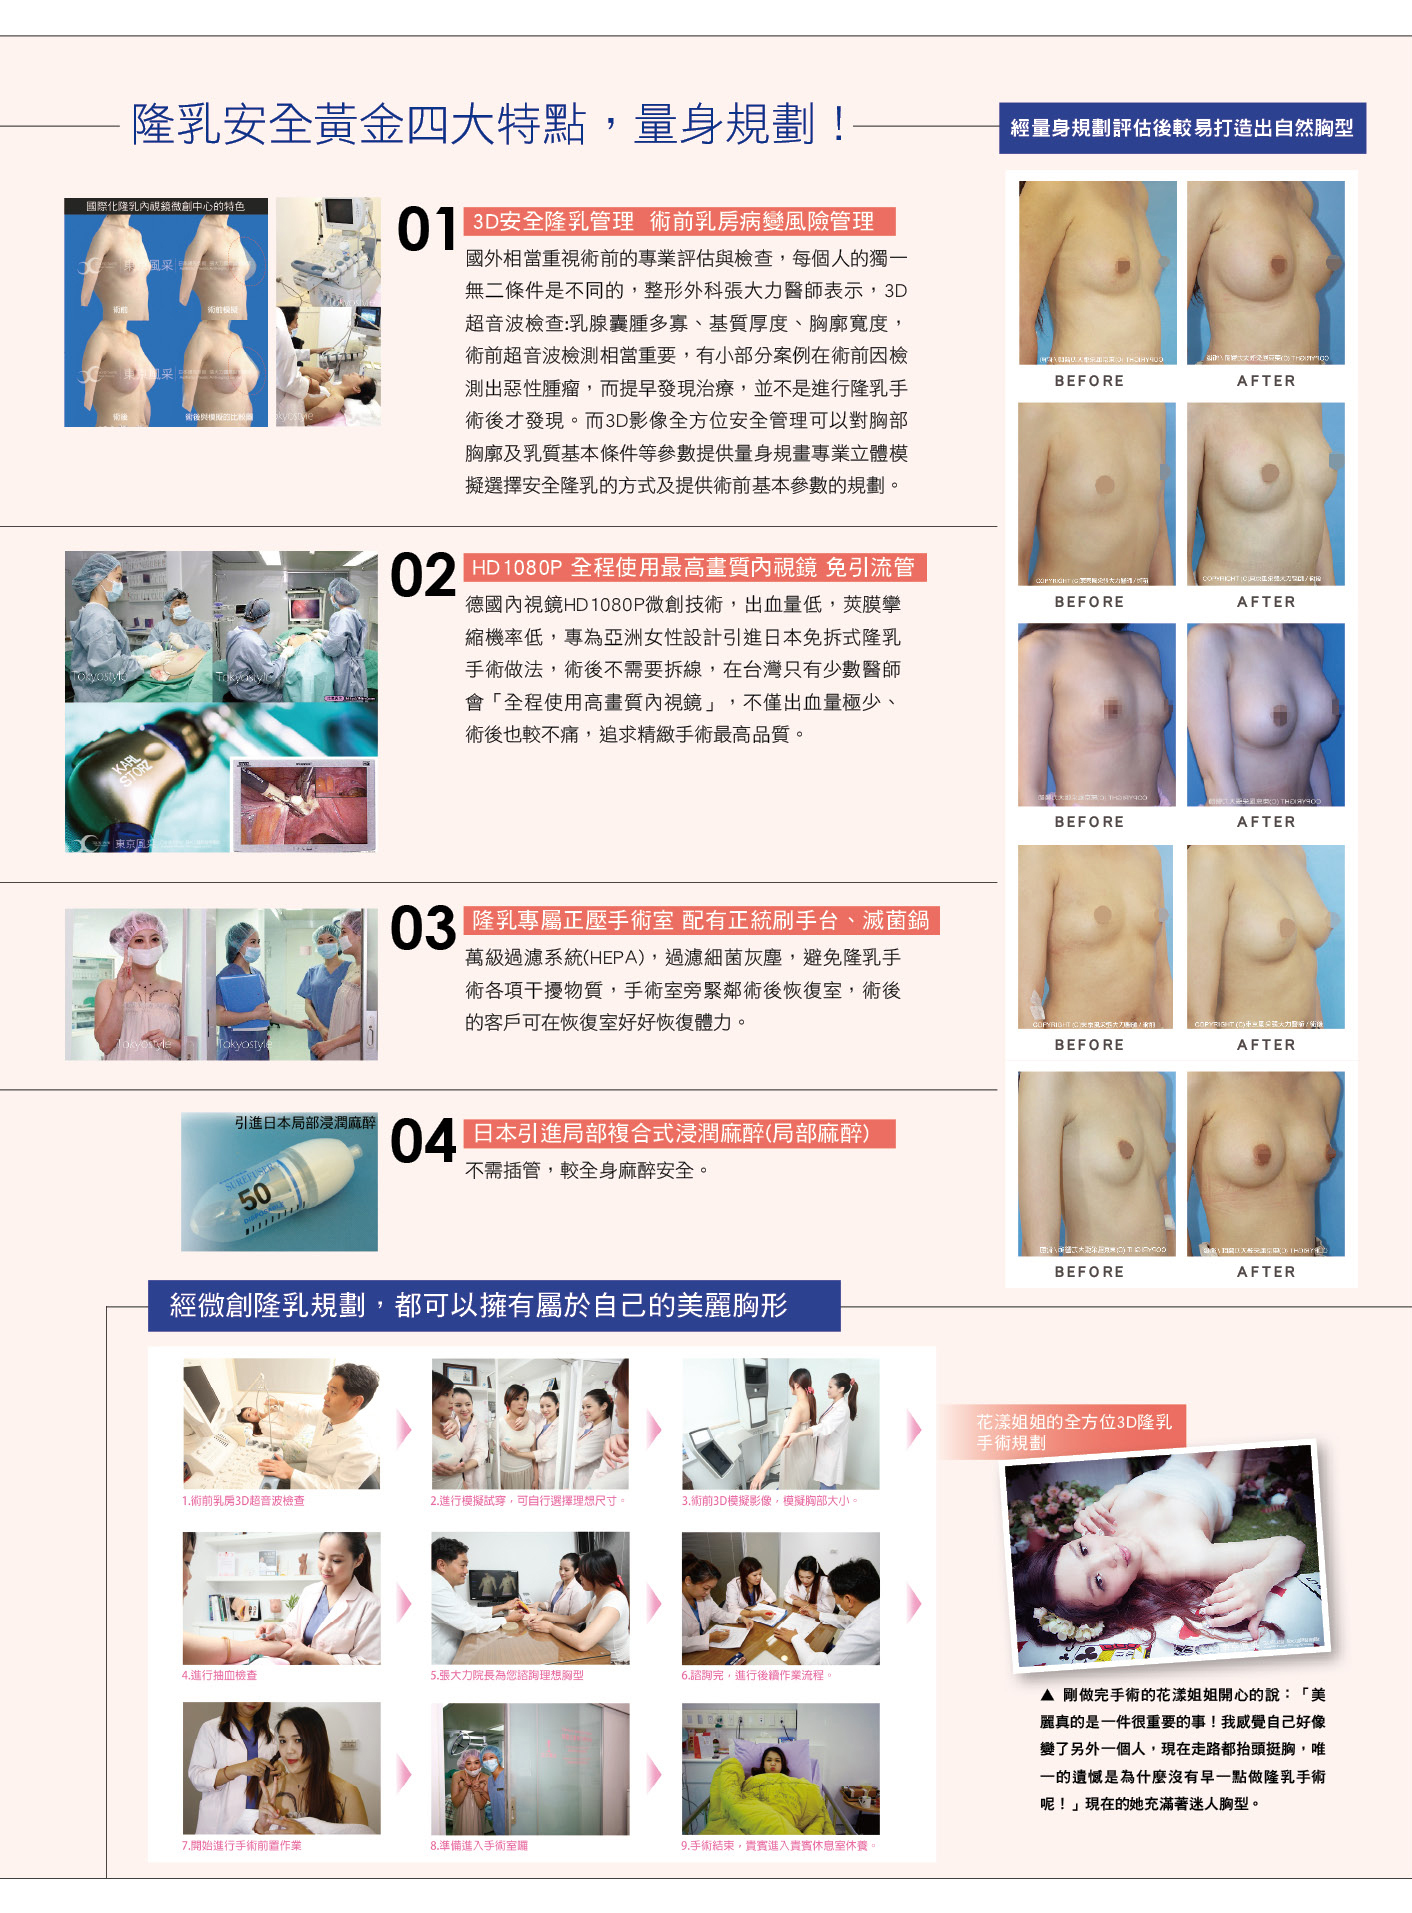 自體脂肪隆乳 醫師沒說的秘密-雜誌專訪-張大力-整形名醫-東京風采